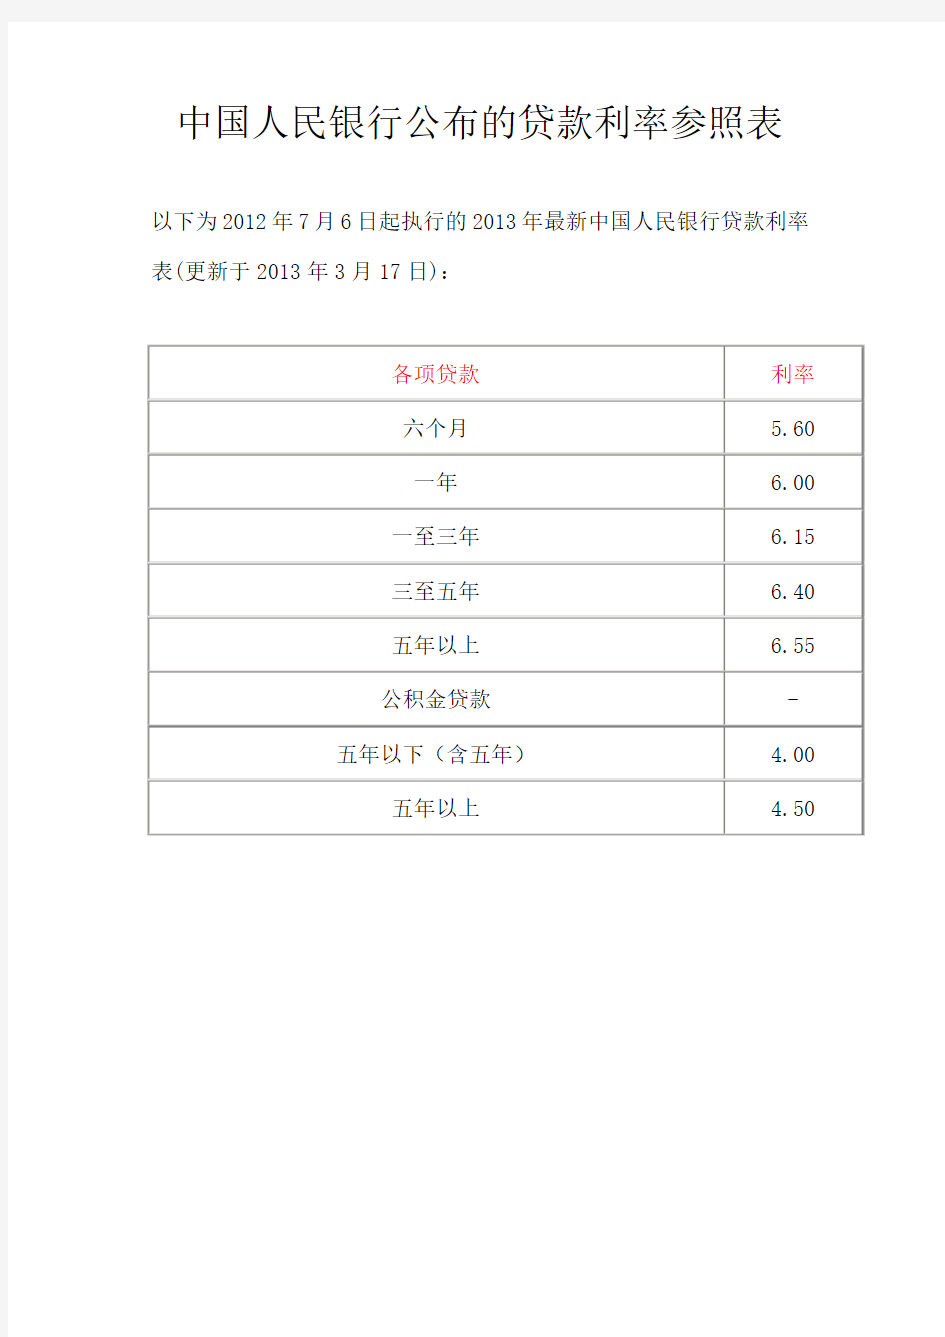 中国人民银行公布的贷款利率参照表